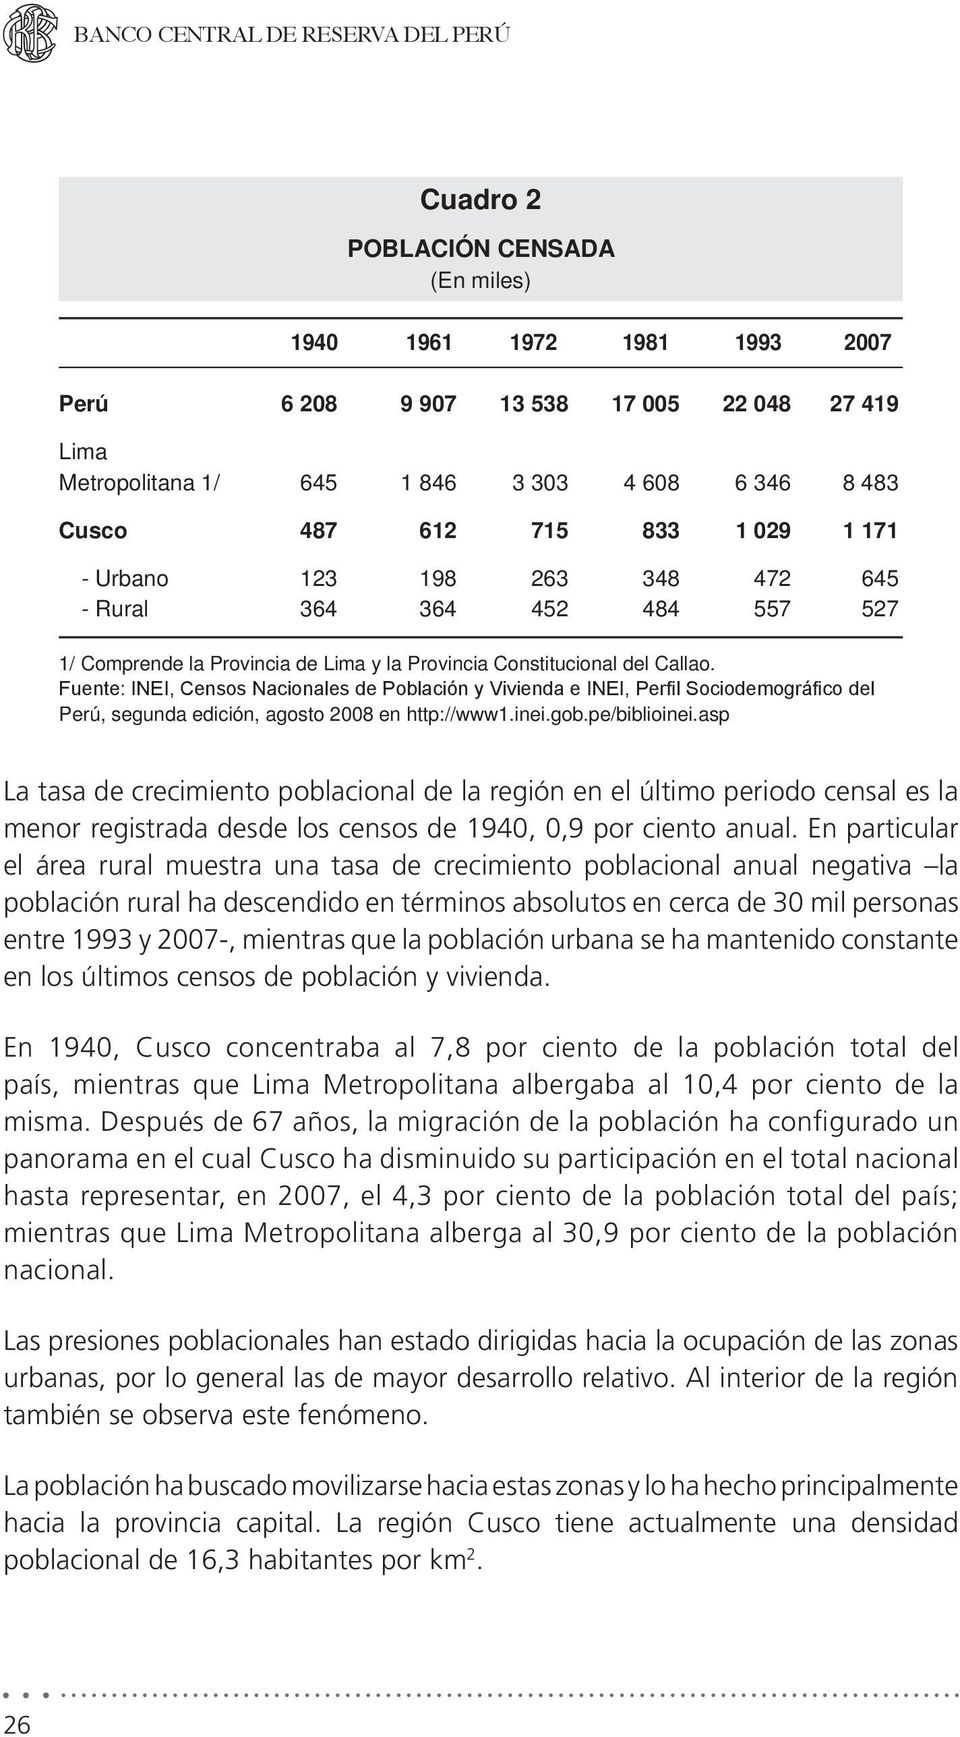 Fuente: INEI, Censos Nacionales de Población y Vivienda e INEI, Perfil Sociodemográfico del Perú, segunda edición, agosto 2008 en http://www1.inei.gob.pe/biblioinei.